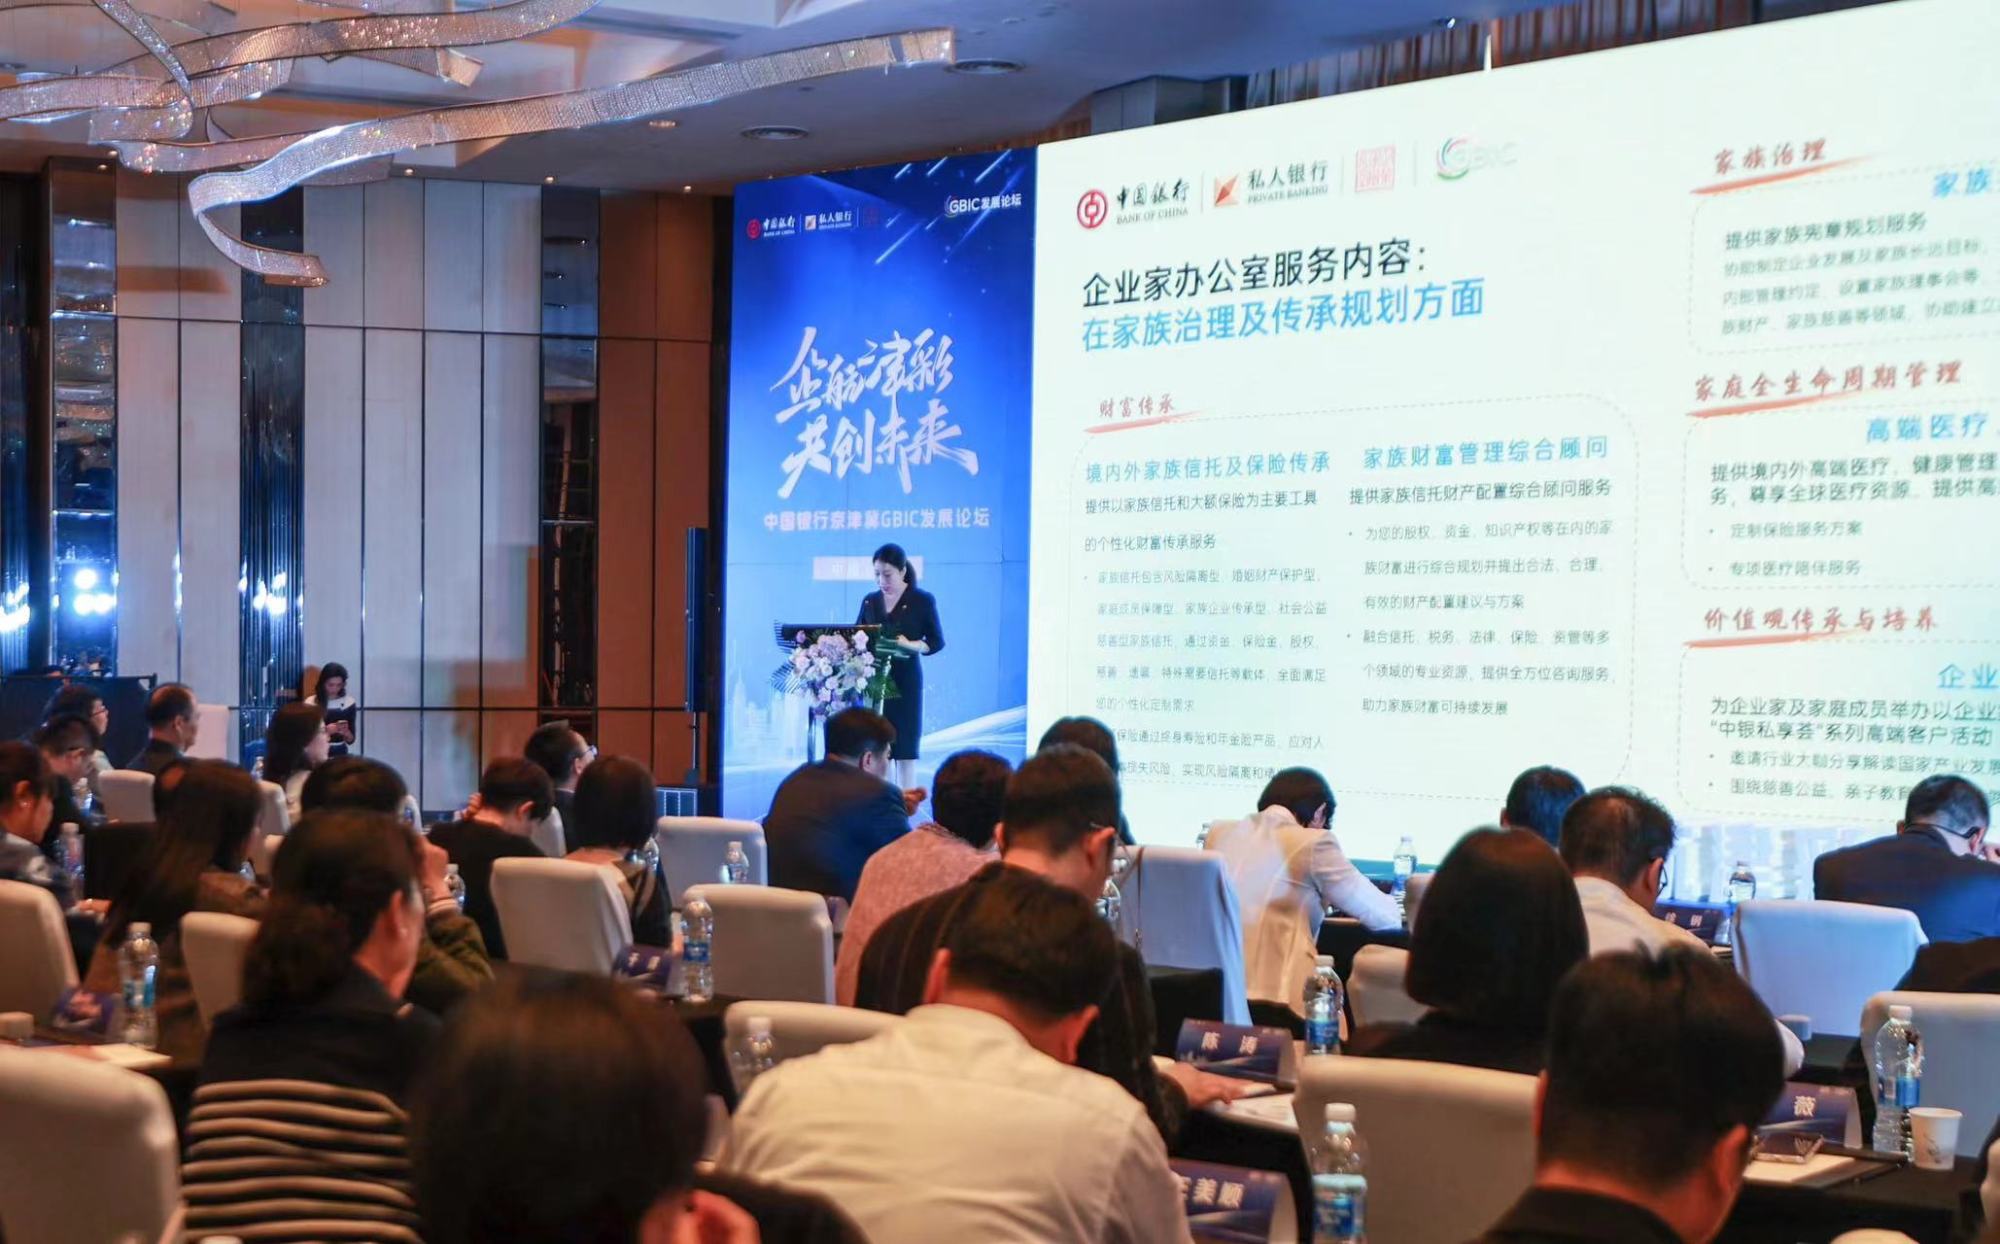 中国银行天津市分行推出“企业家办公室”服务